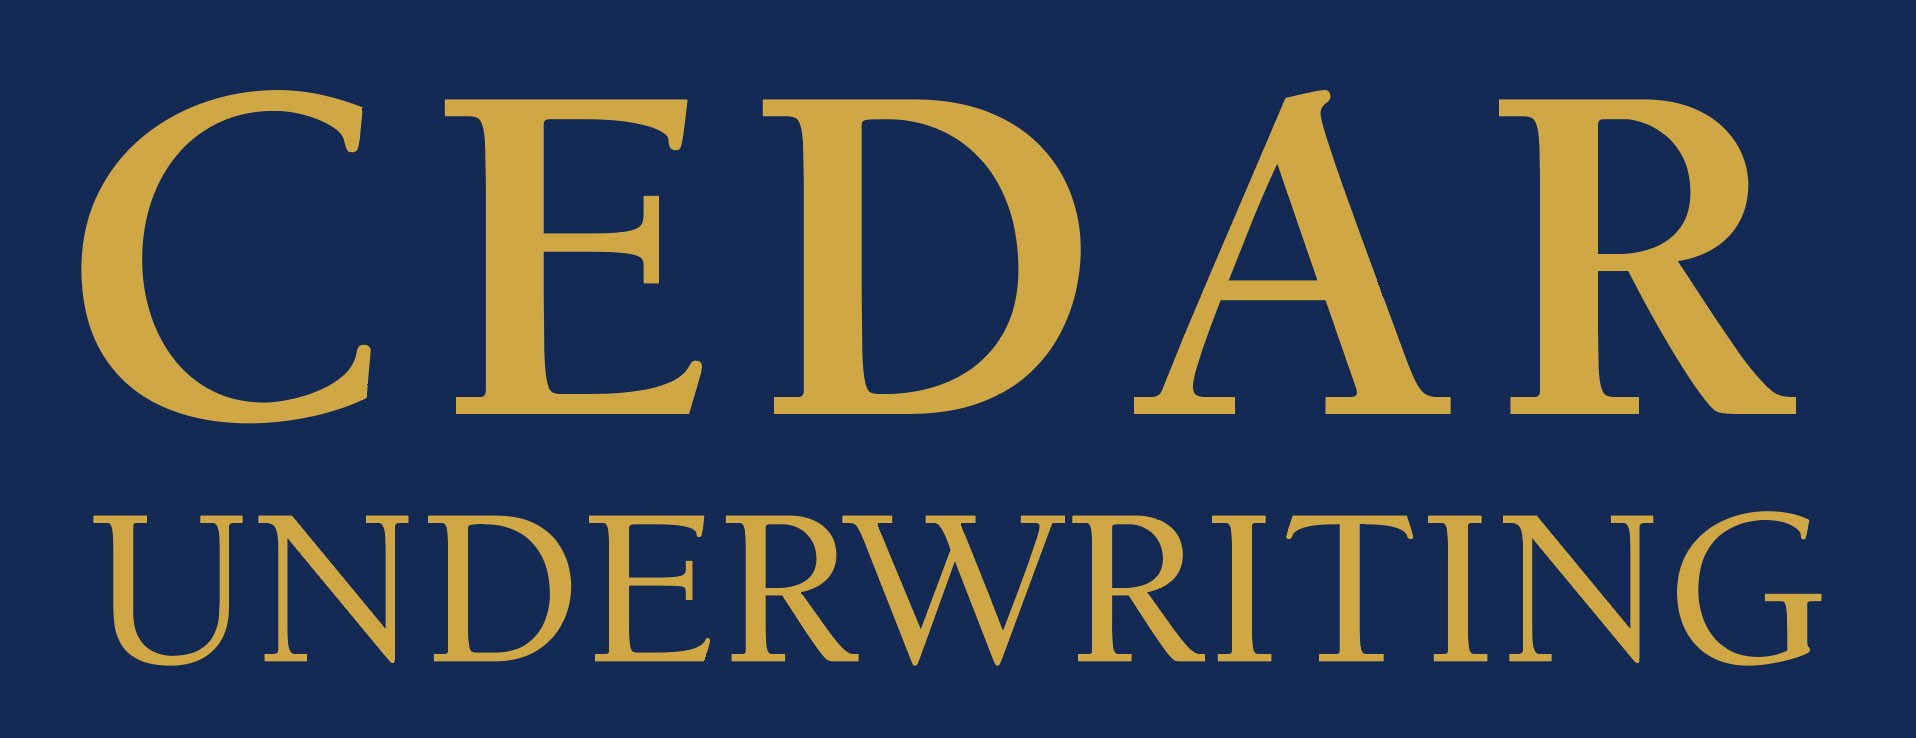 Cedar Underwriting